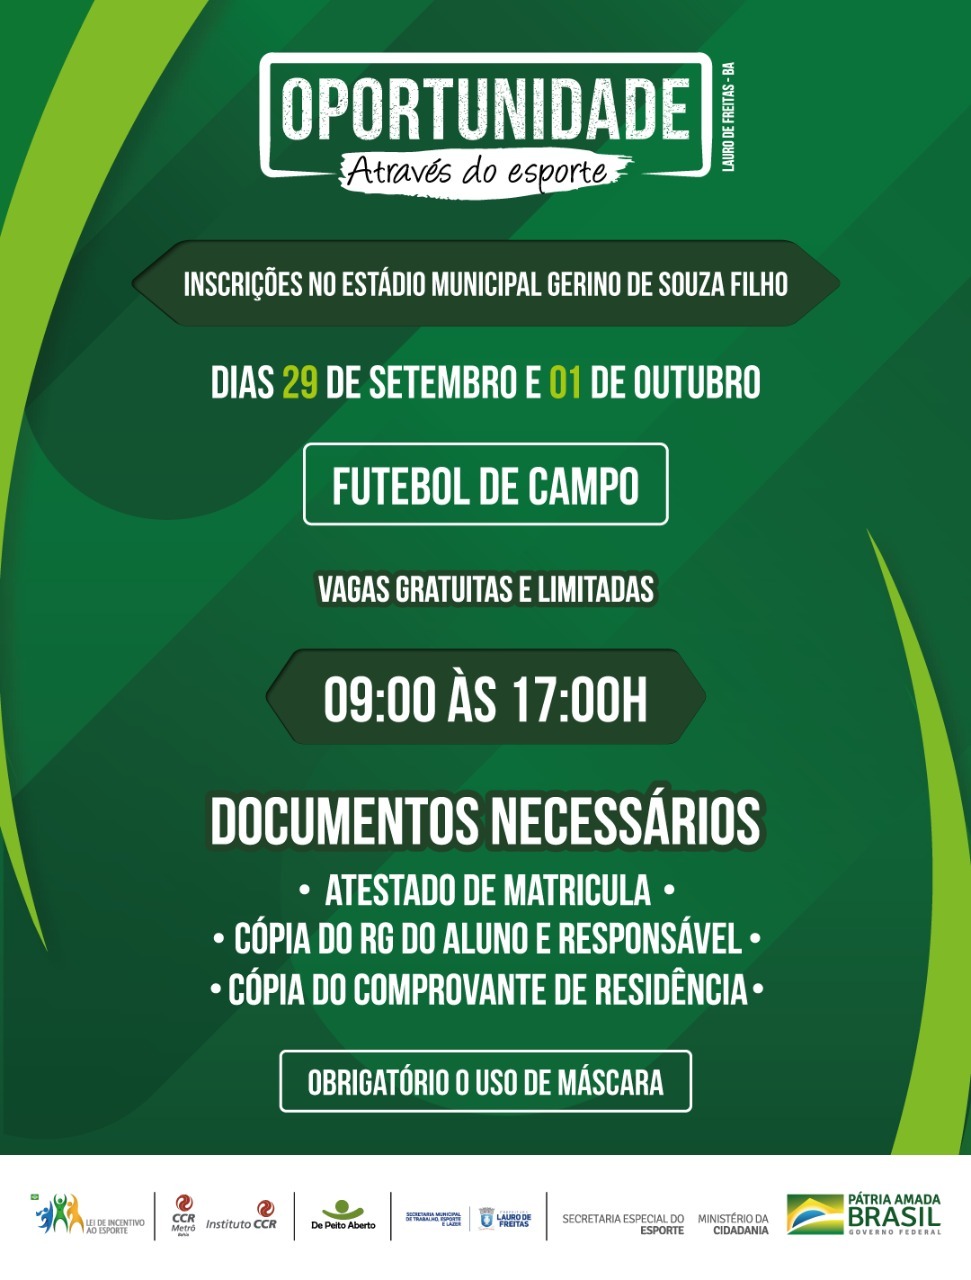  Projeto Oportunidade Através do Esporte abre vagas para aulas gratuitas de futebol de campo em Lauro de Freitas